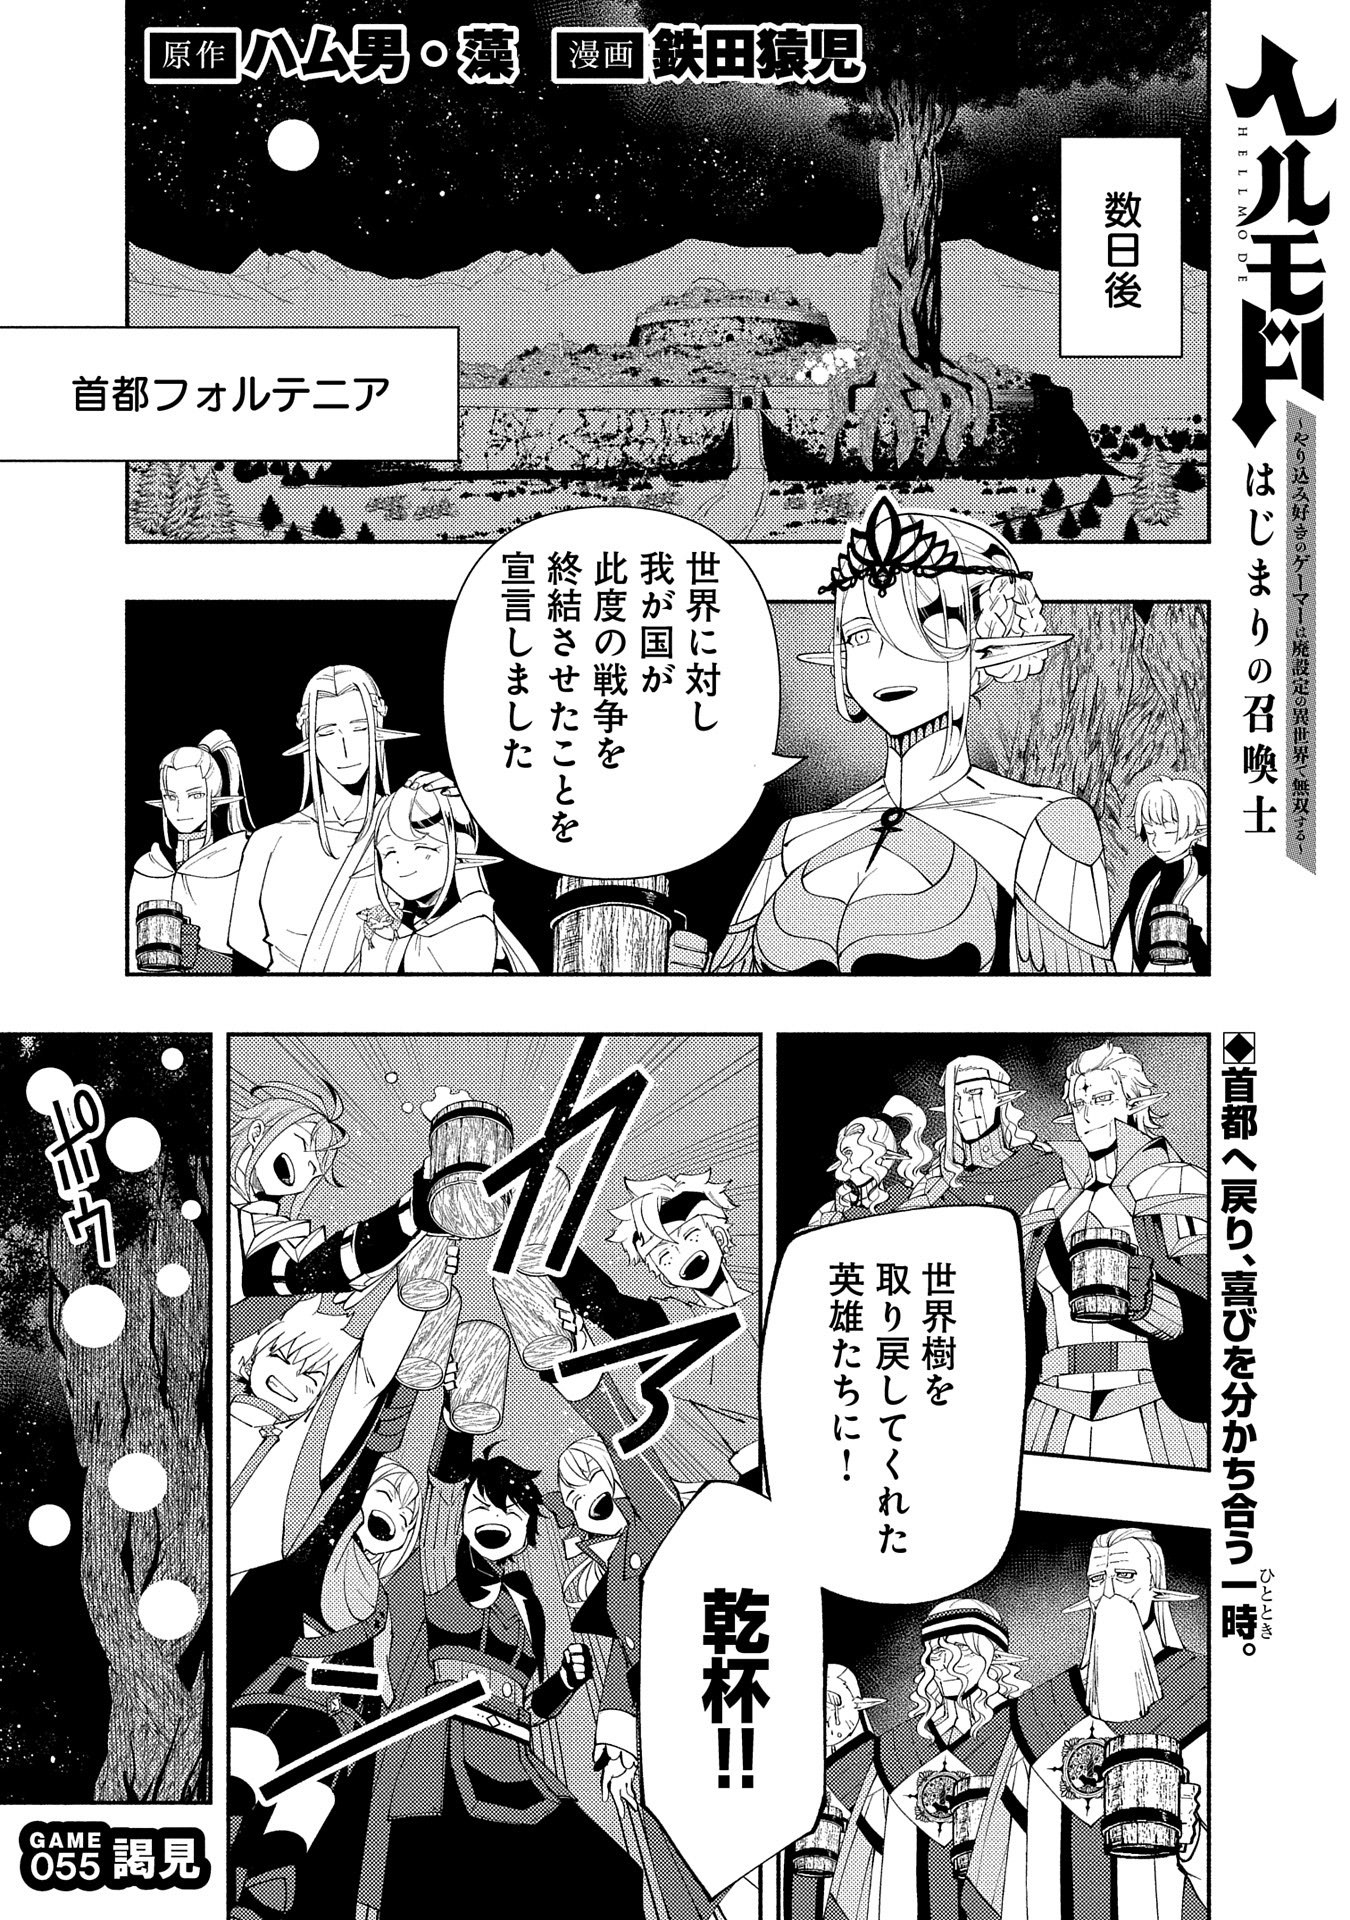 Hell Mode: Yarikomi Suki no Gamer wa Hai Settei no Isekai de Musou Suru - Chapter 55 - Page 1